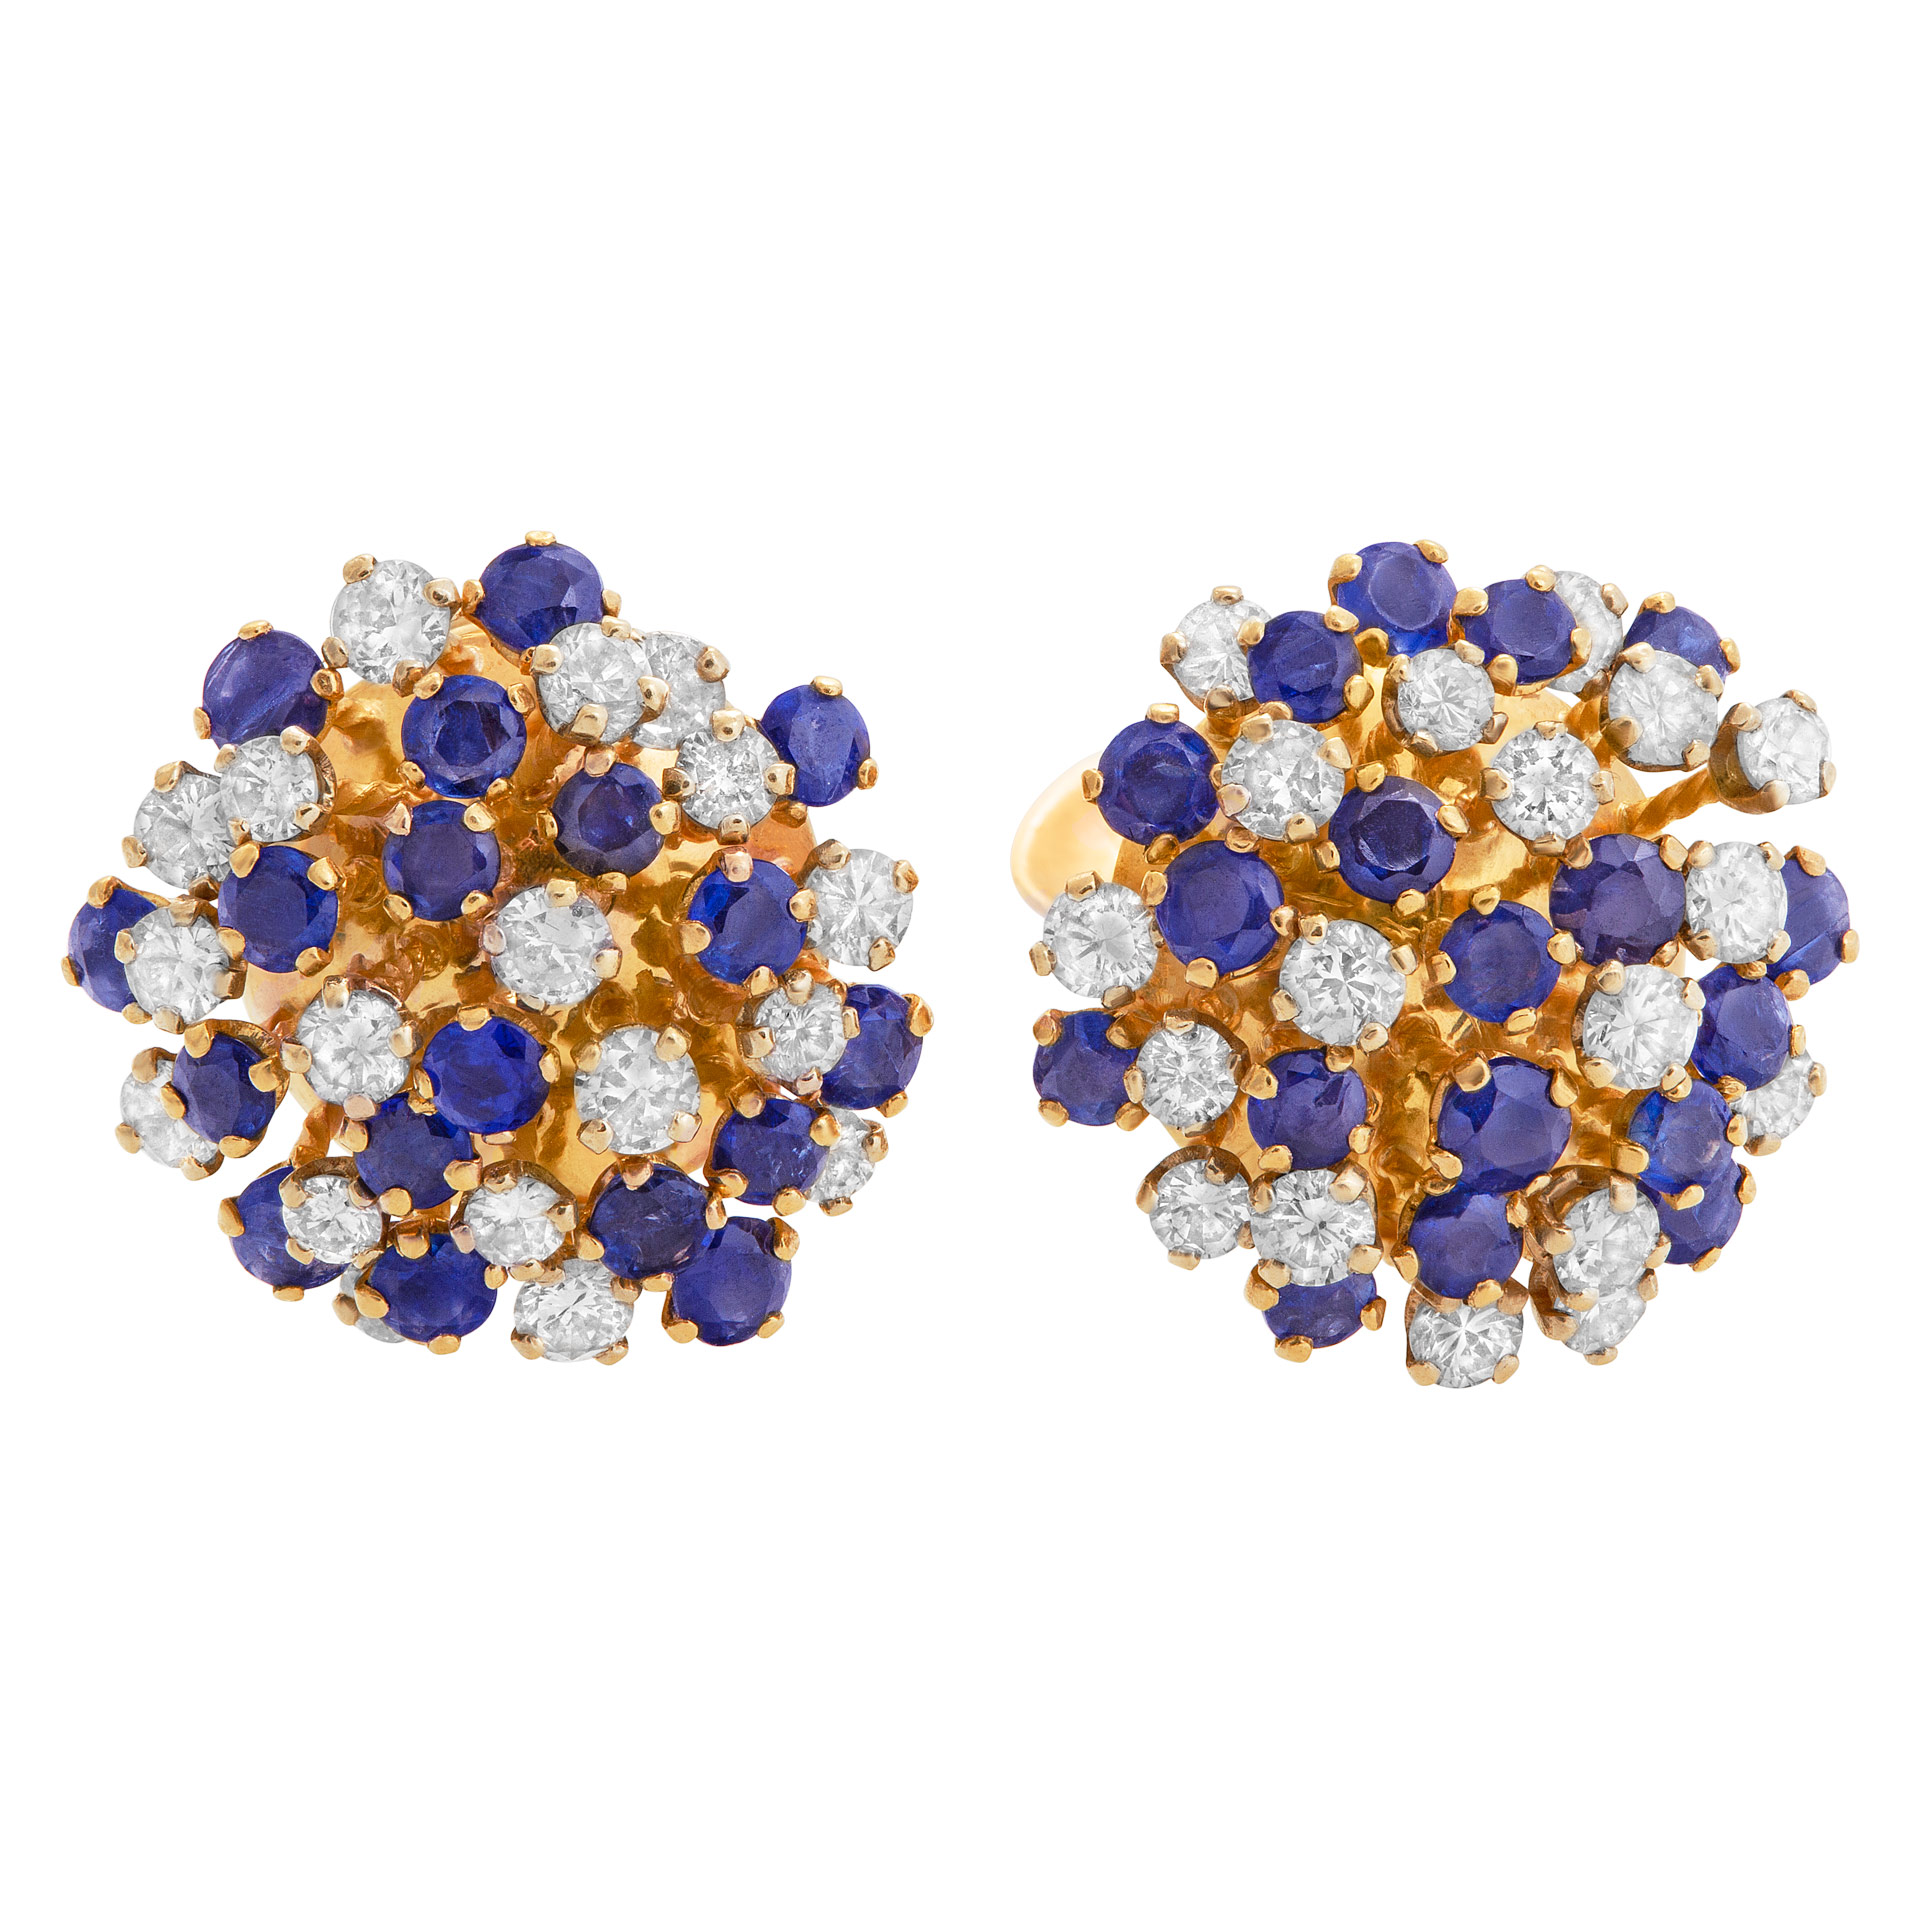 Sapphire & diamond earrings in 14k yellow gold